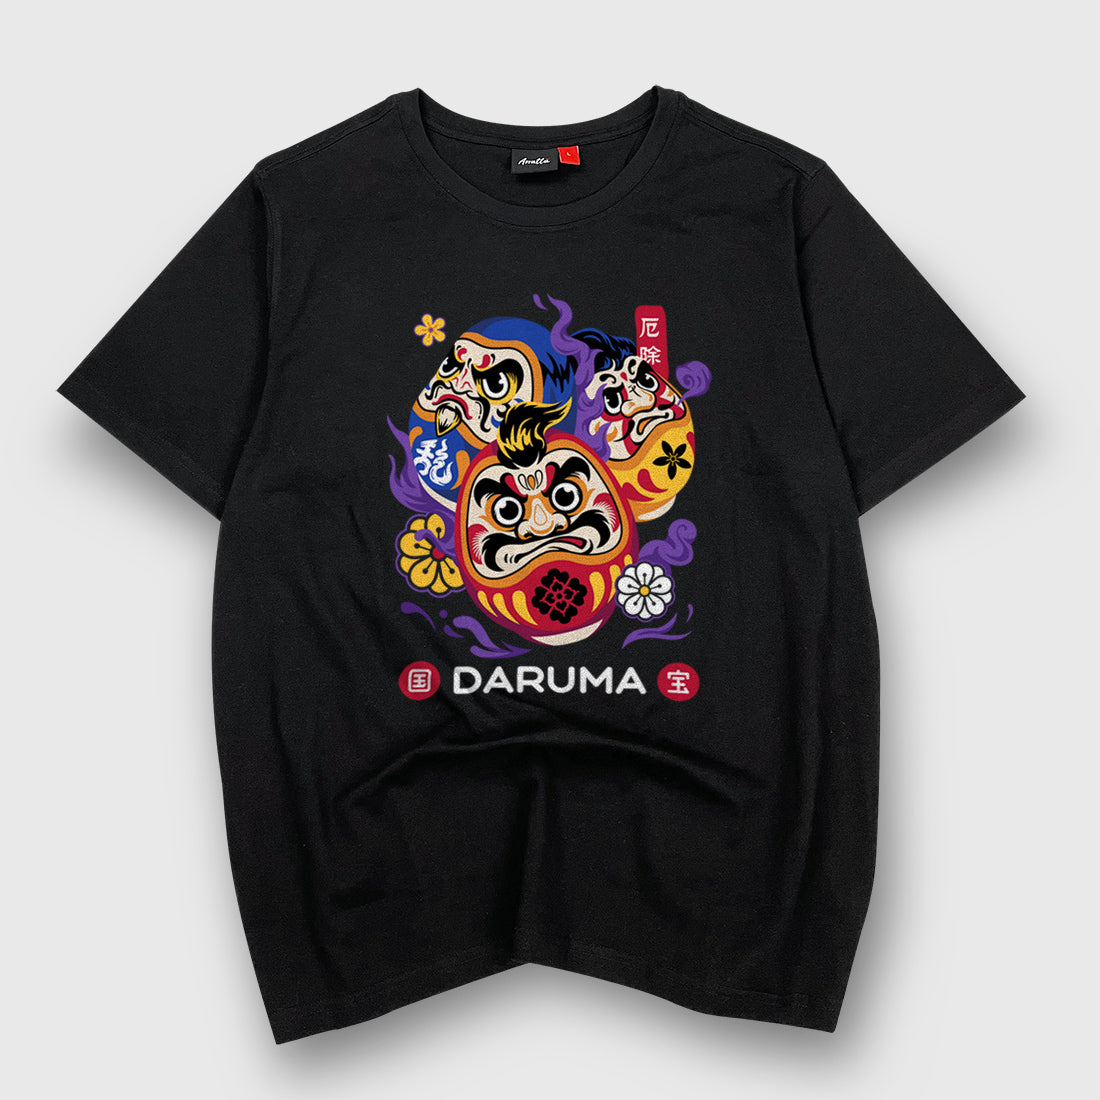 Japanese Daruma Doll Painted T-Shirt L / Black